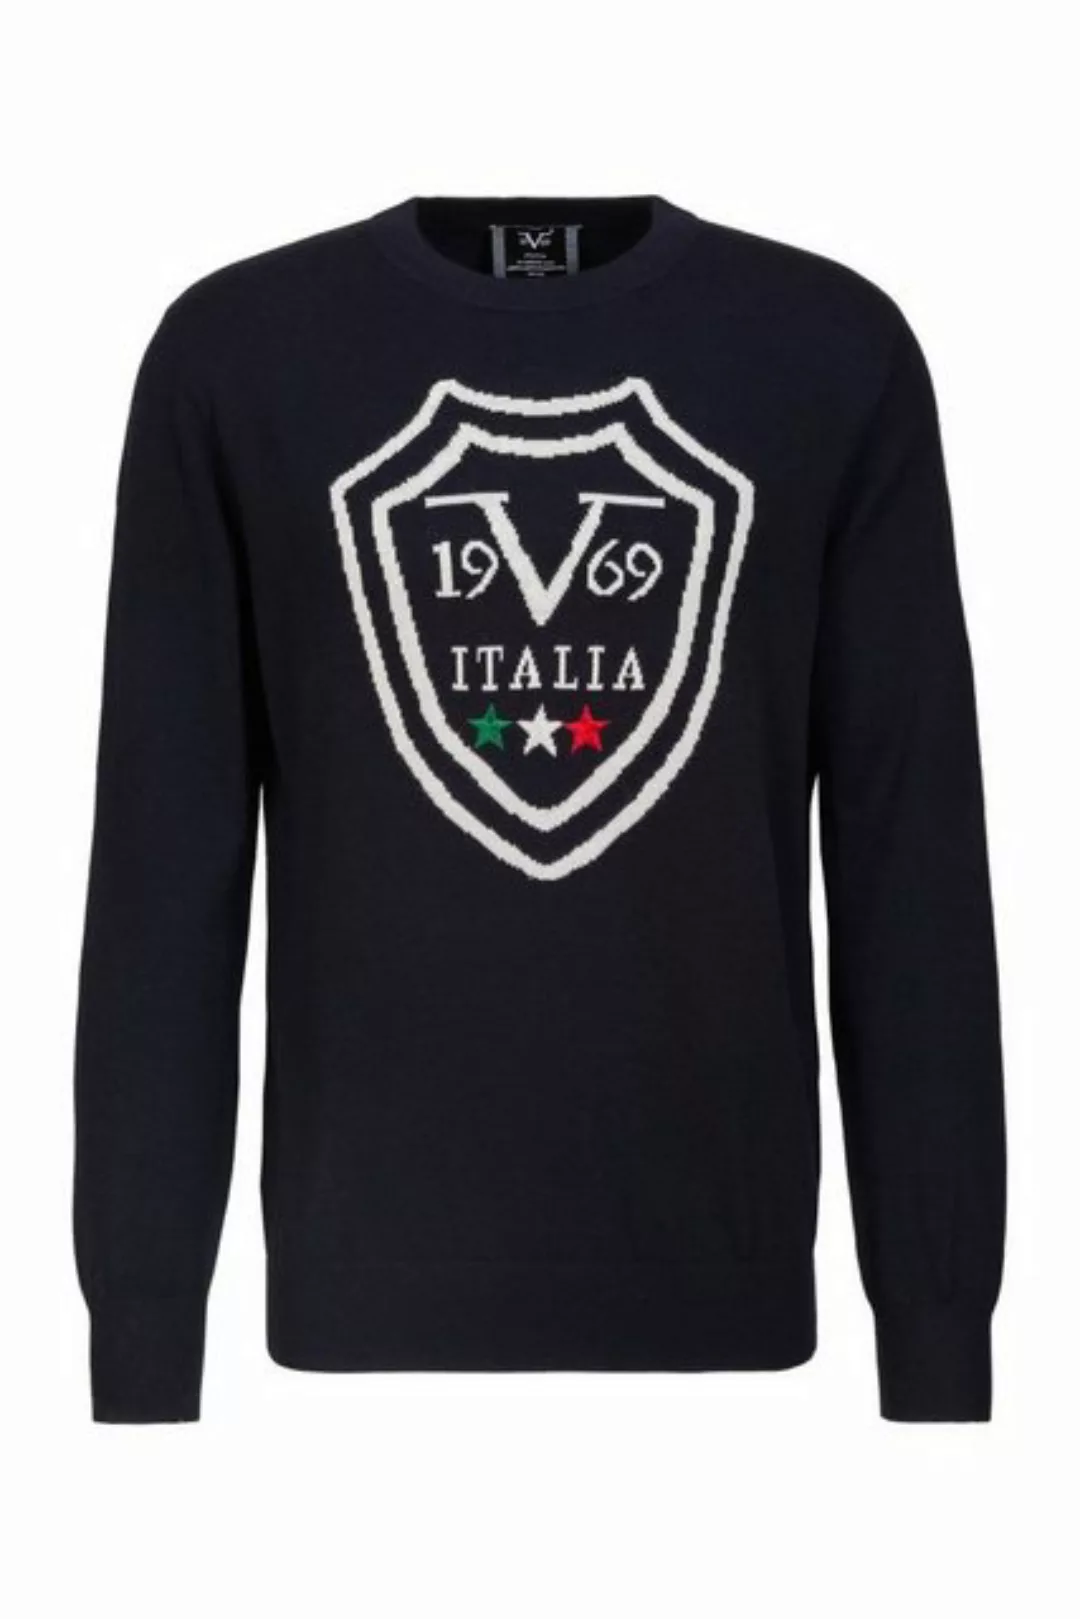 19V69 Italia by Versace Rundhalspullover by Versace Sportivo SRL - Tilo günstig online kaufen